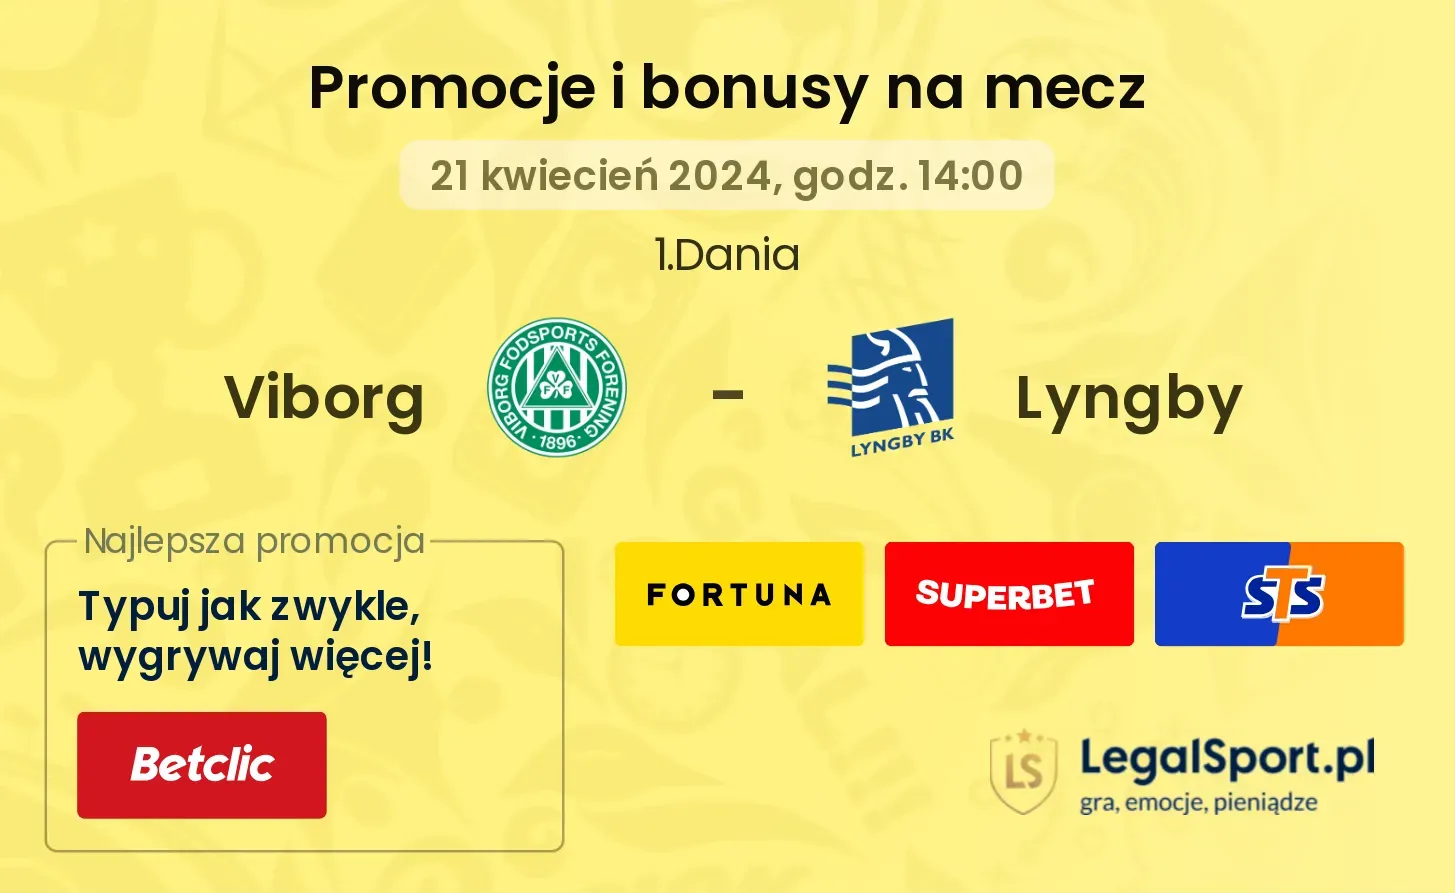 Viborg - Lyngby promocje bonusy na mecz